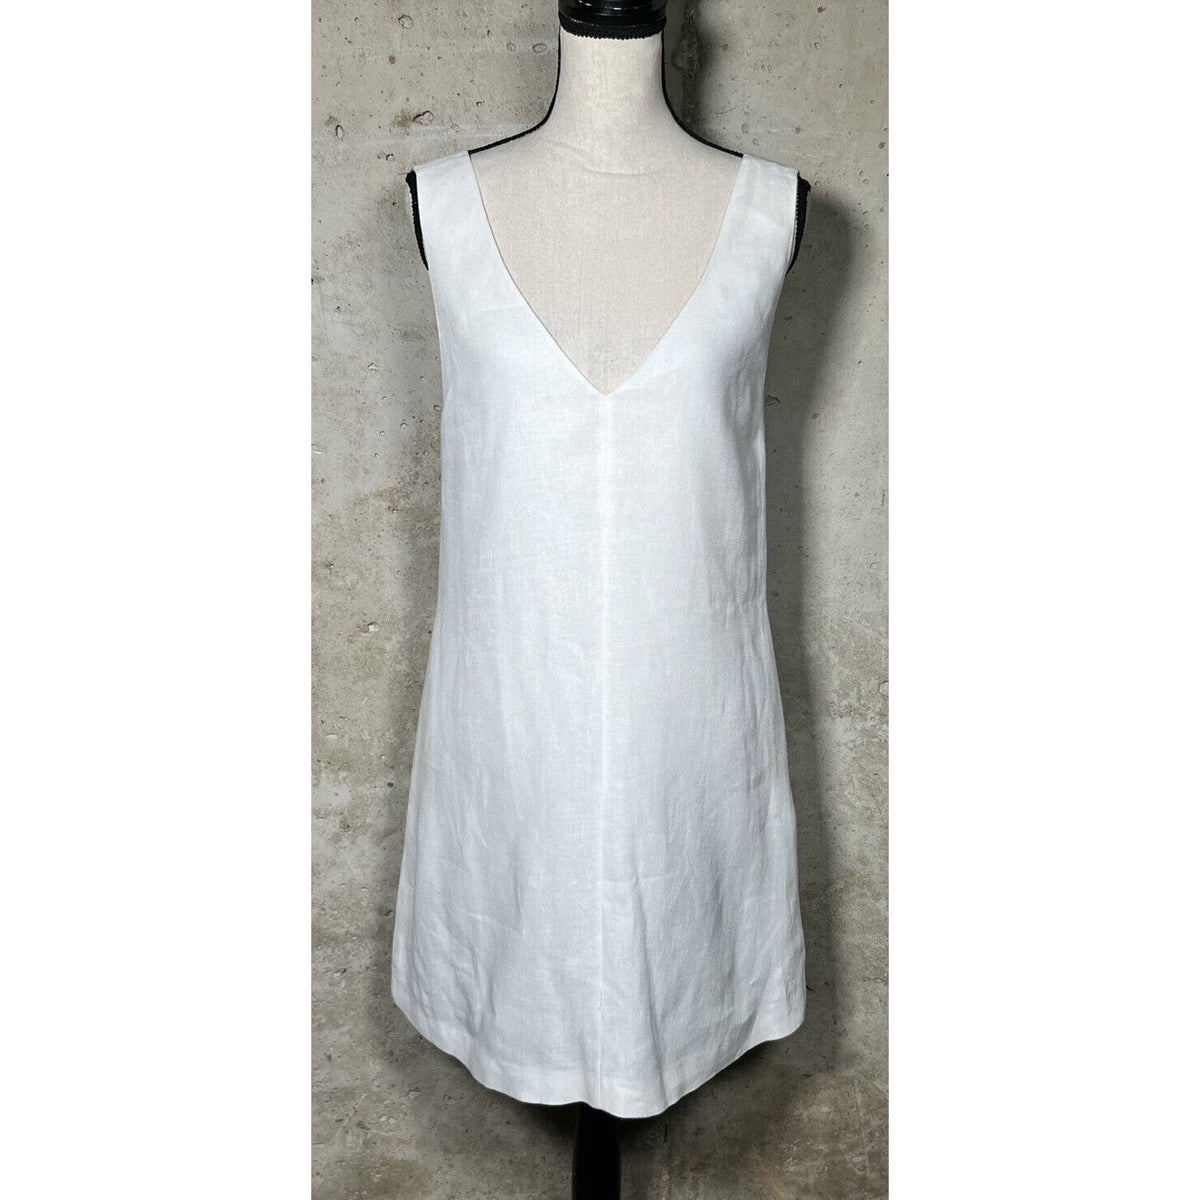 Theory V-Neck 100% Linen Sleeveless Dress Sz. Small NEW